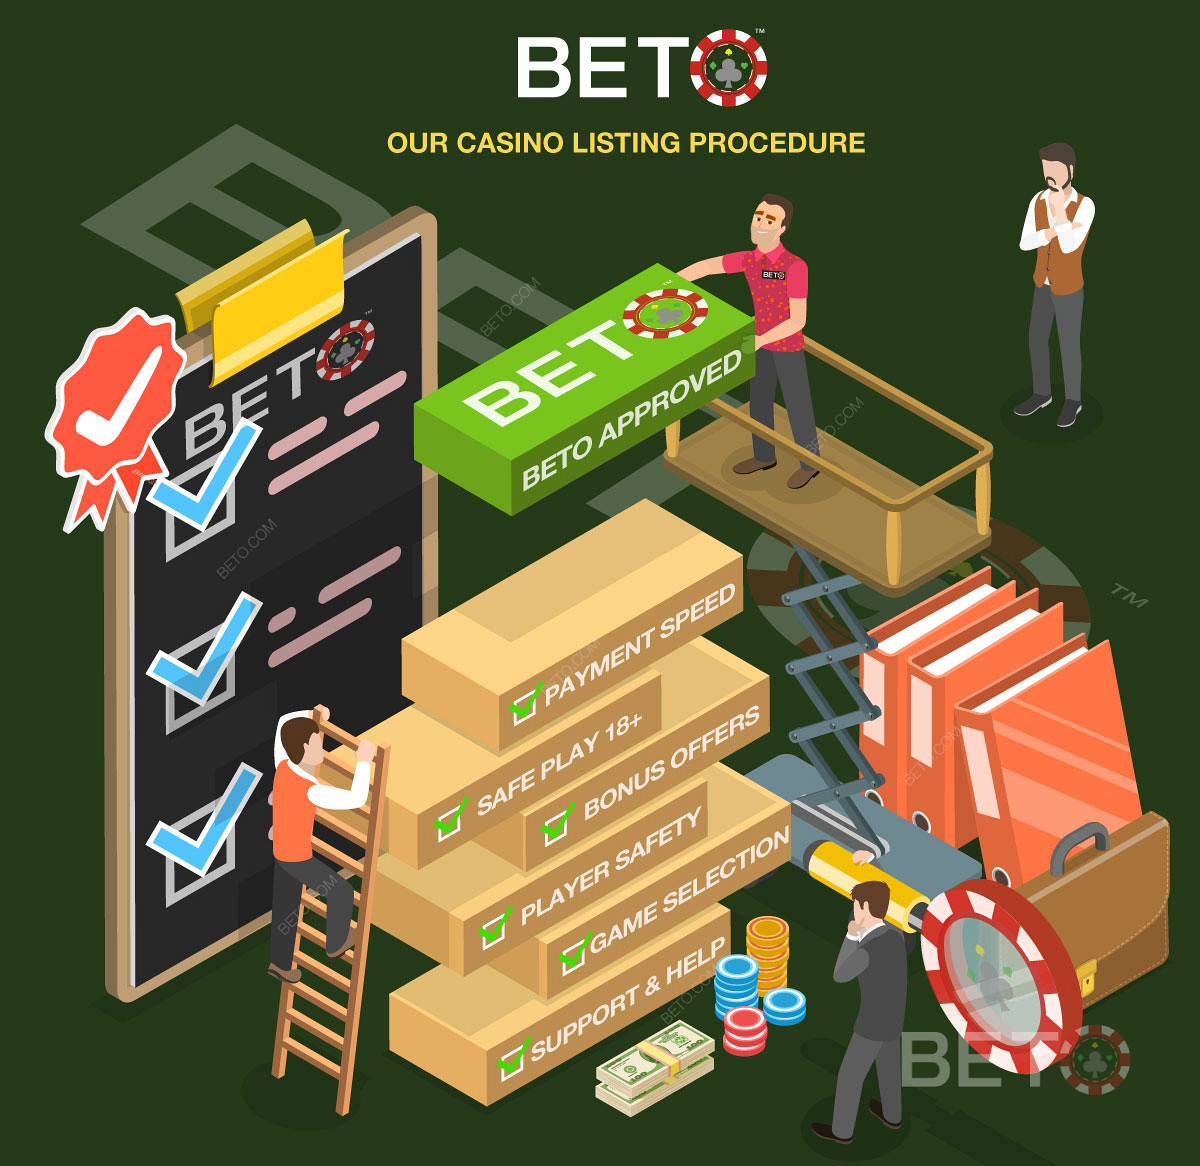 Den detaljerade casinorecensionsprocessen på BETO.com